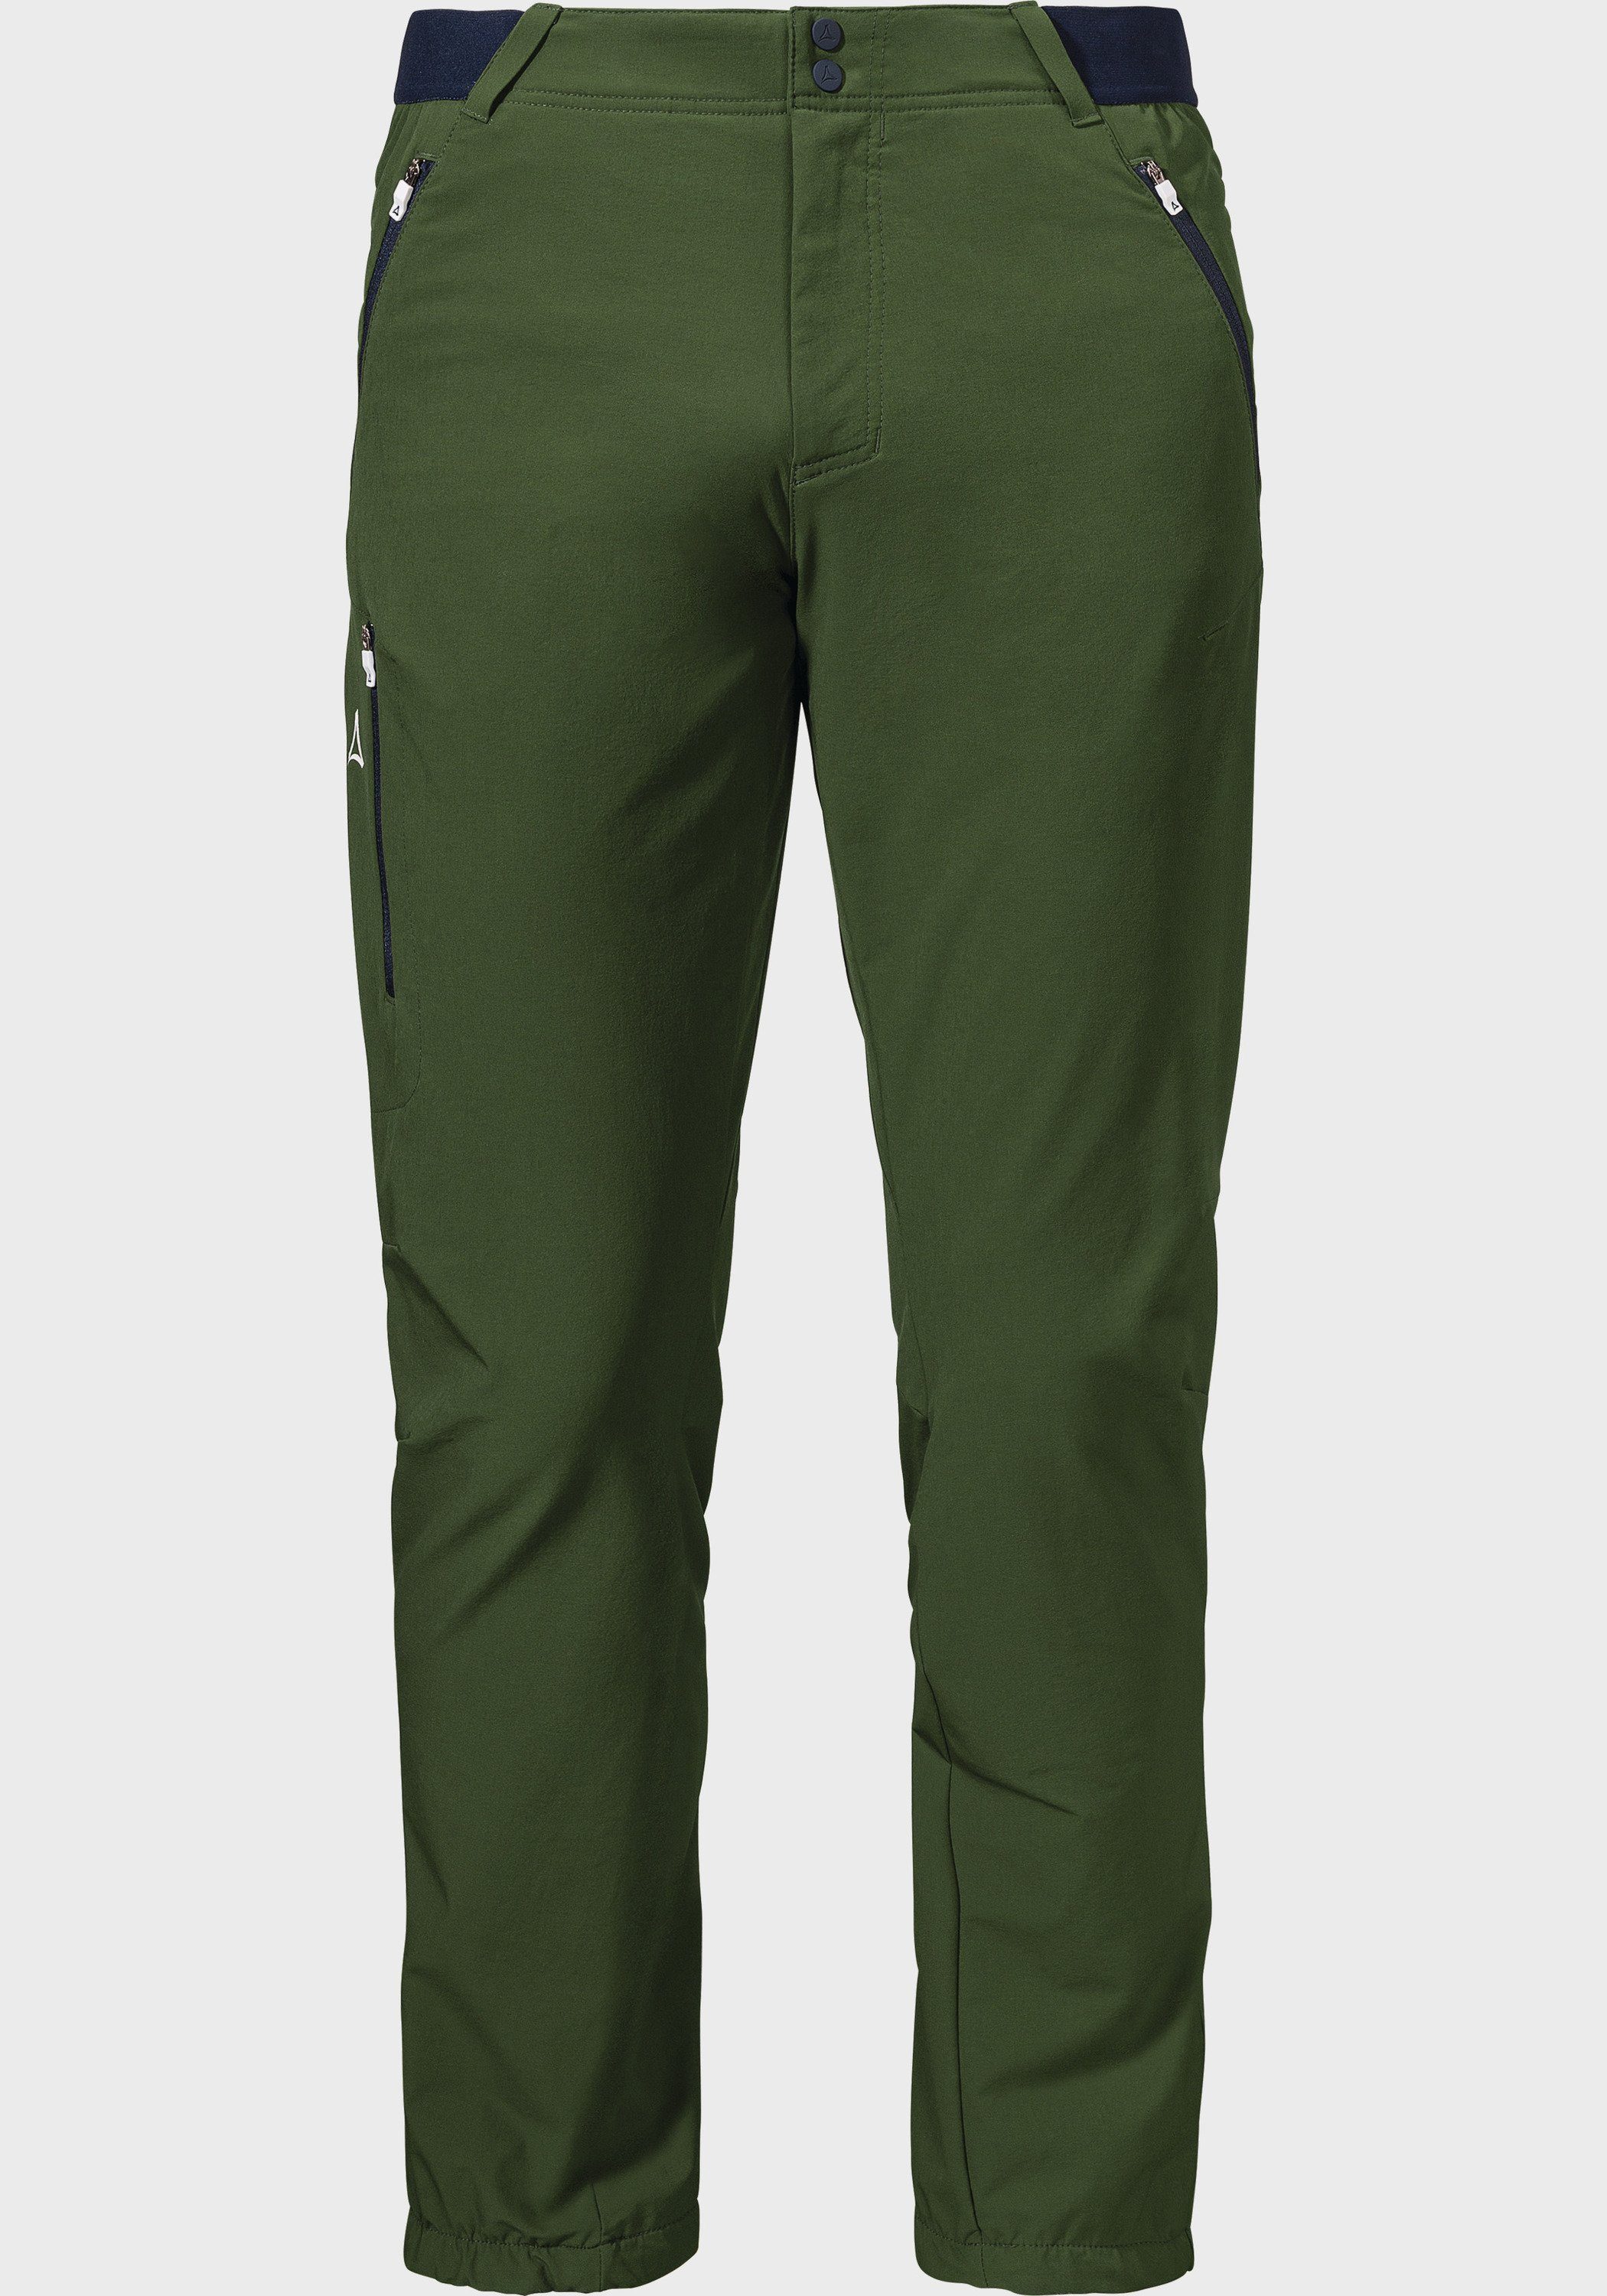 Schöffel Outdoorhose Pants Hochfilzen M grün | Outdoorhosen